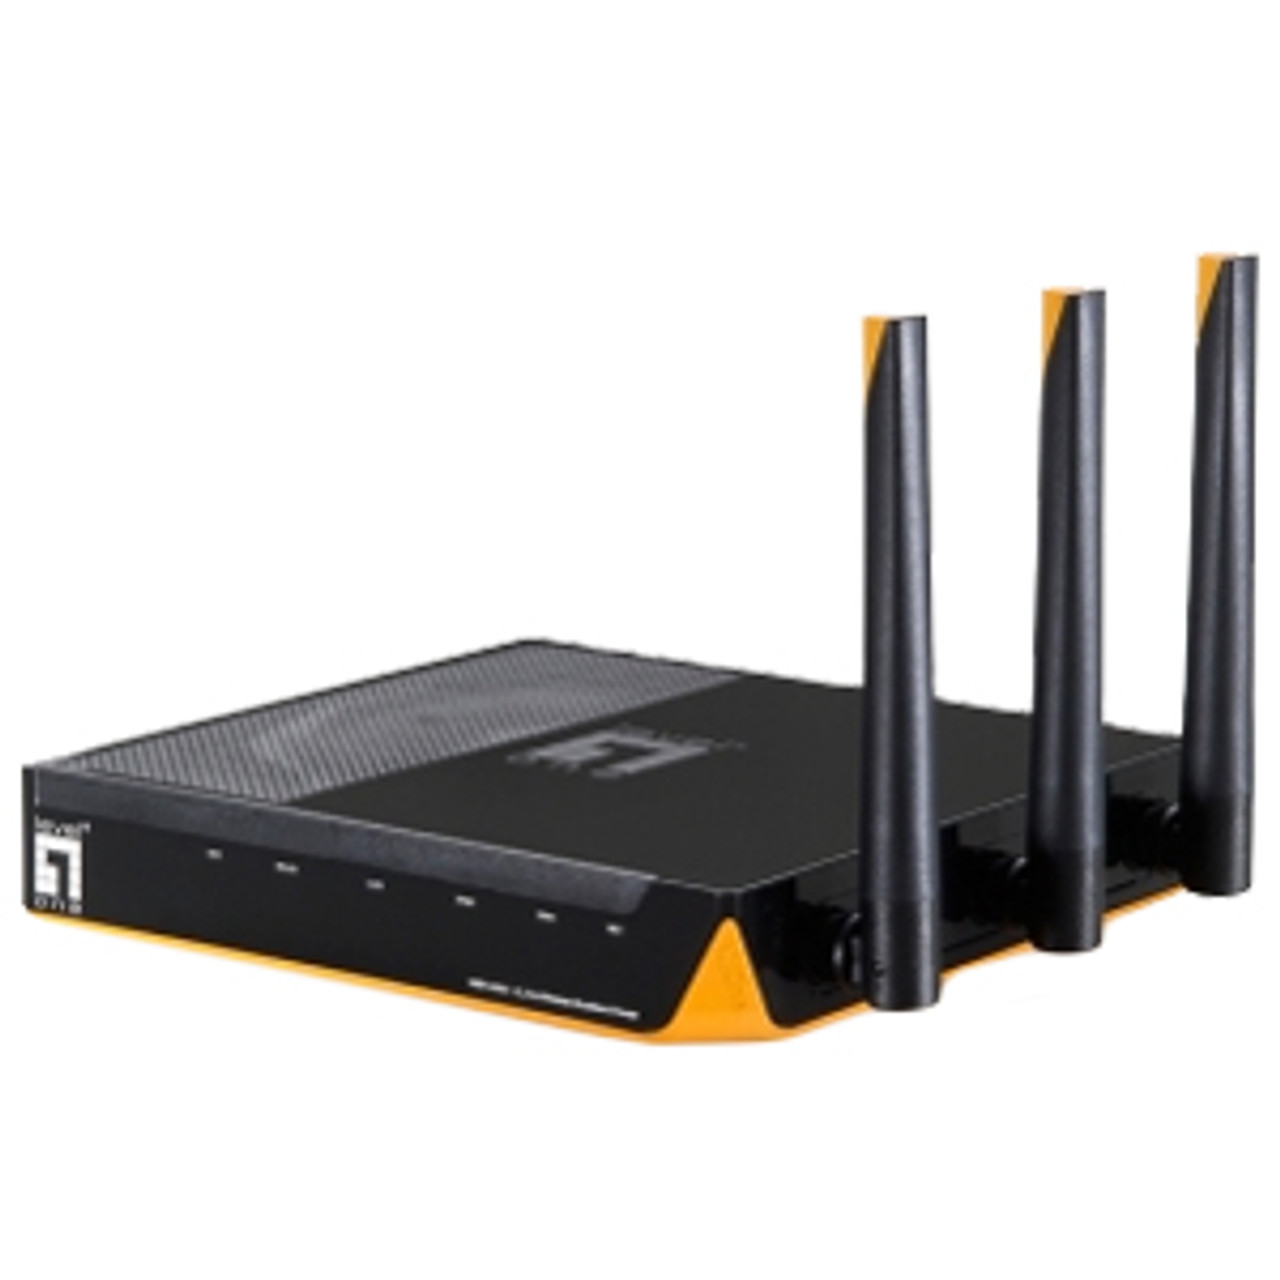 DHWBR6000 LevelOne WBR-6000 300Mbps Wireless N Broadband Router 4 x 10/100Base-TX LAN, 1 x 10/100Base-TX WAN IEEE 802.11n (draft) 300Mbps (Refurbished)